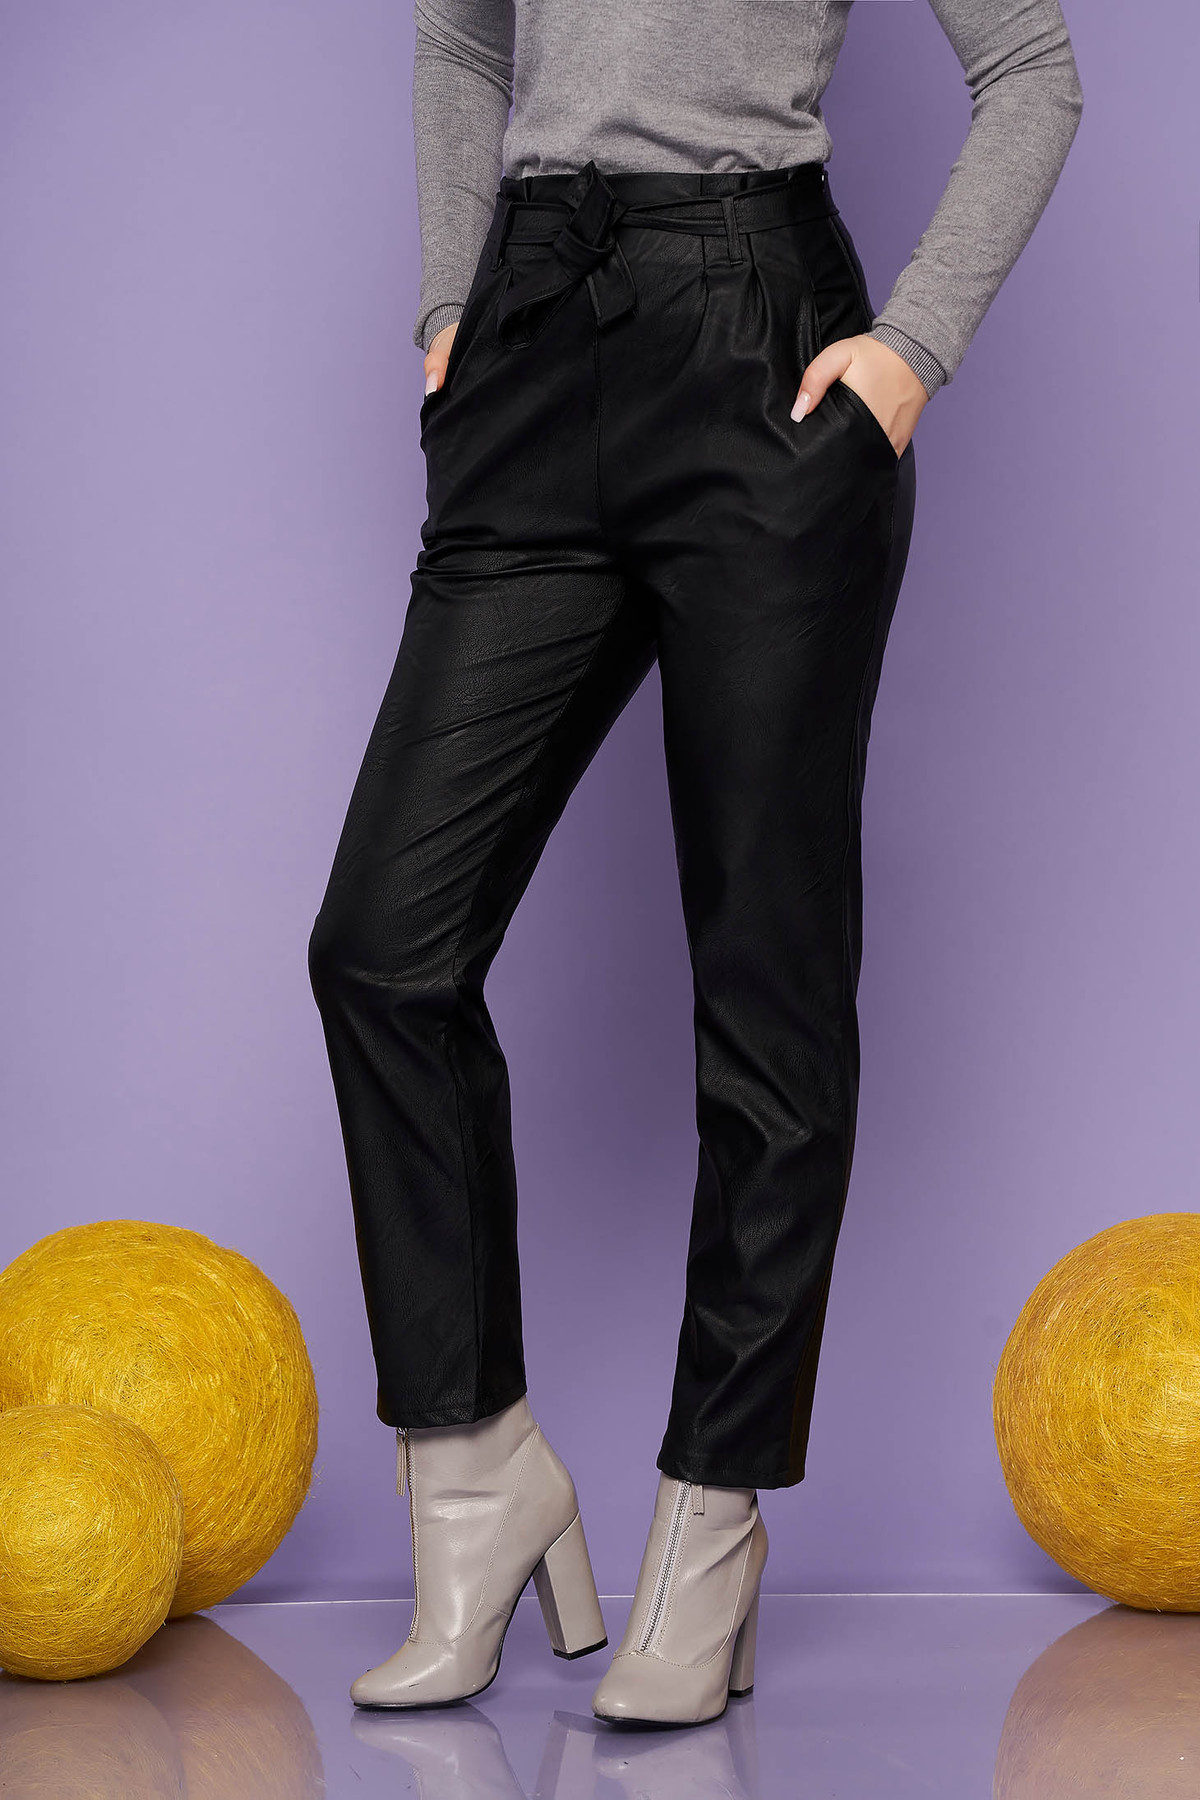 Pantaloni SunShine negri casual din piele ecologica conici cu talie inalta cu buzunare si accesorizati cu cordon